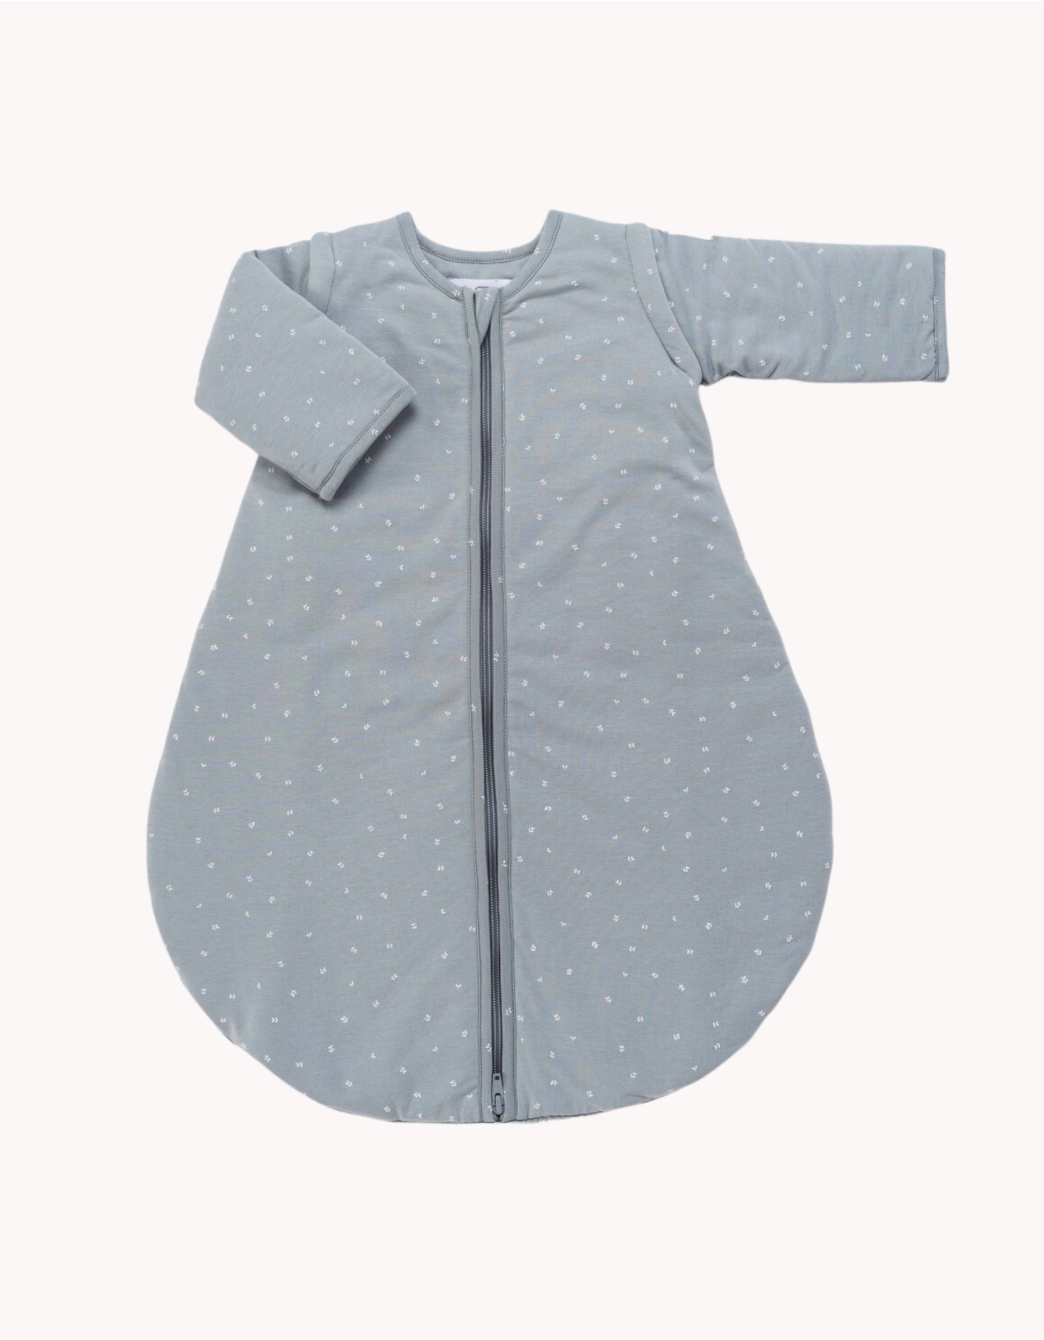 Sacos de dormir para bebés: la guía definitiva - Petite Marmotte Blog